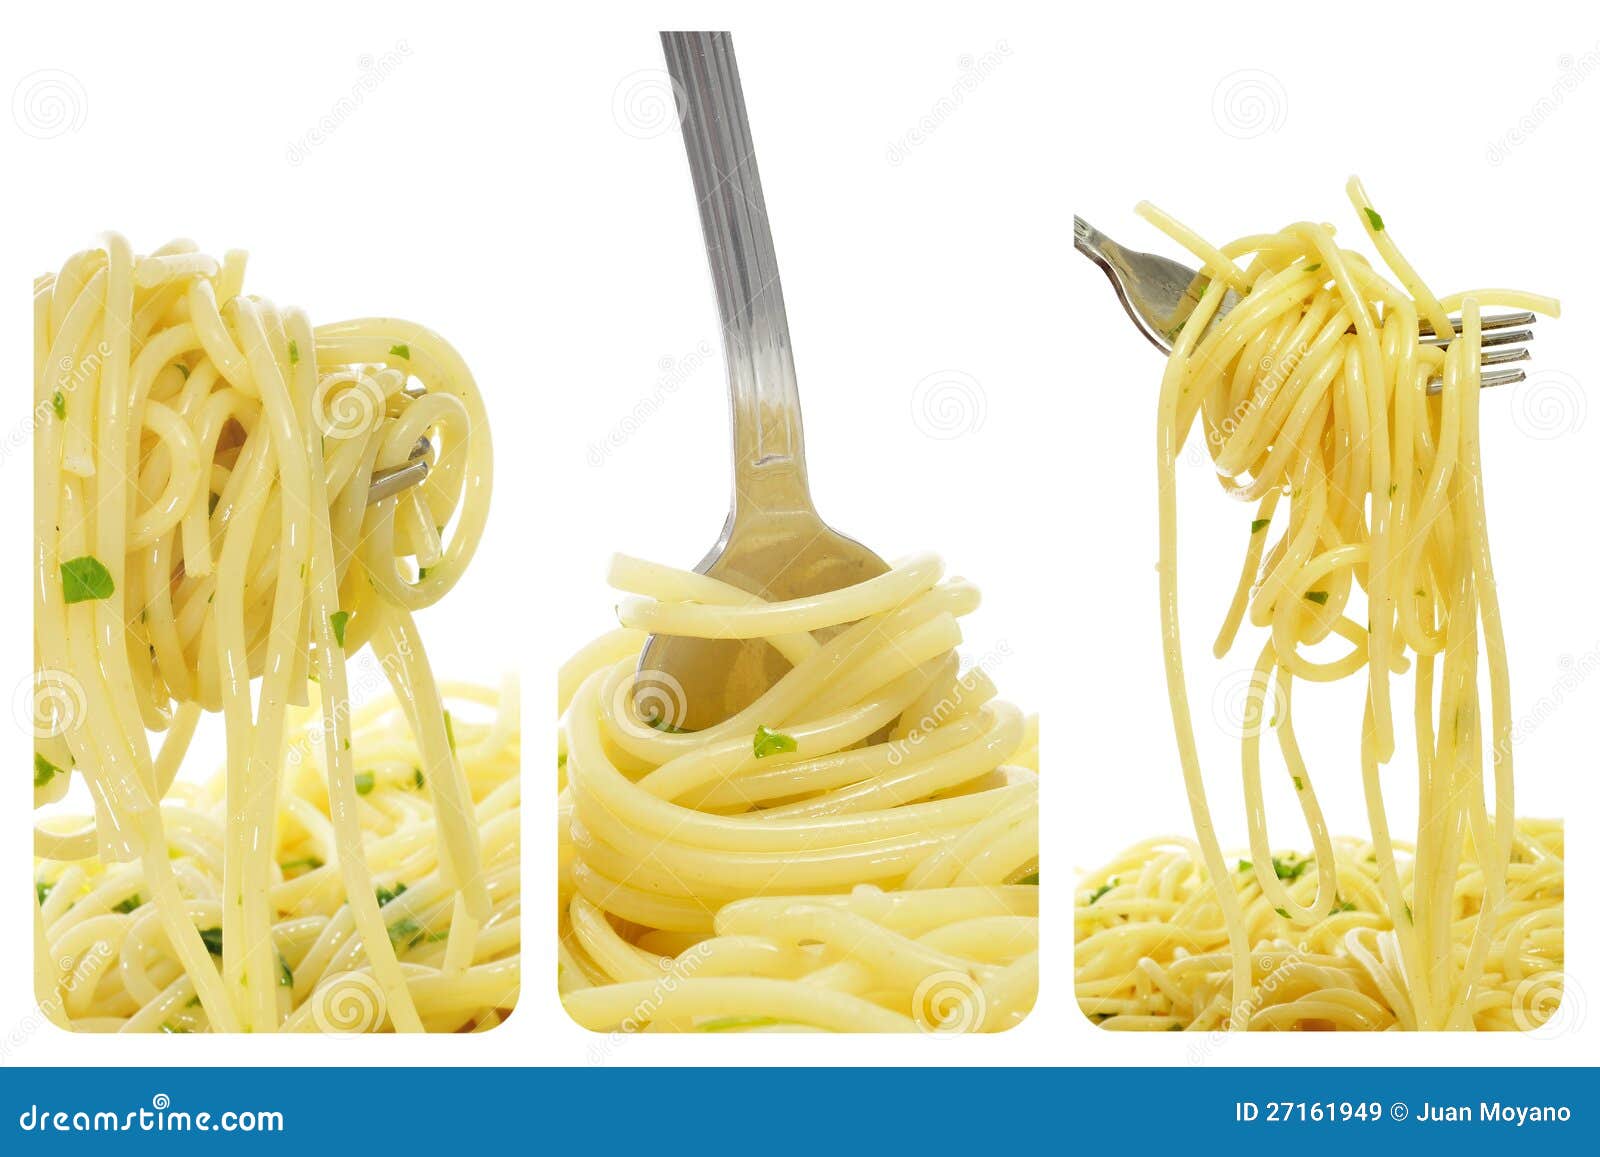 spaghetti collage